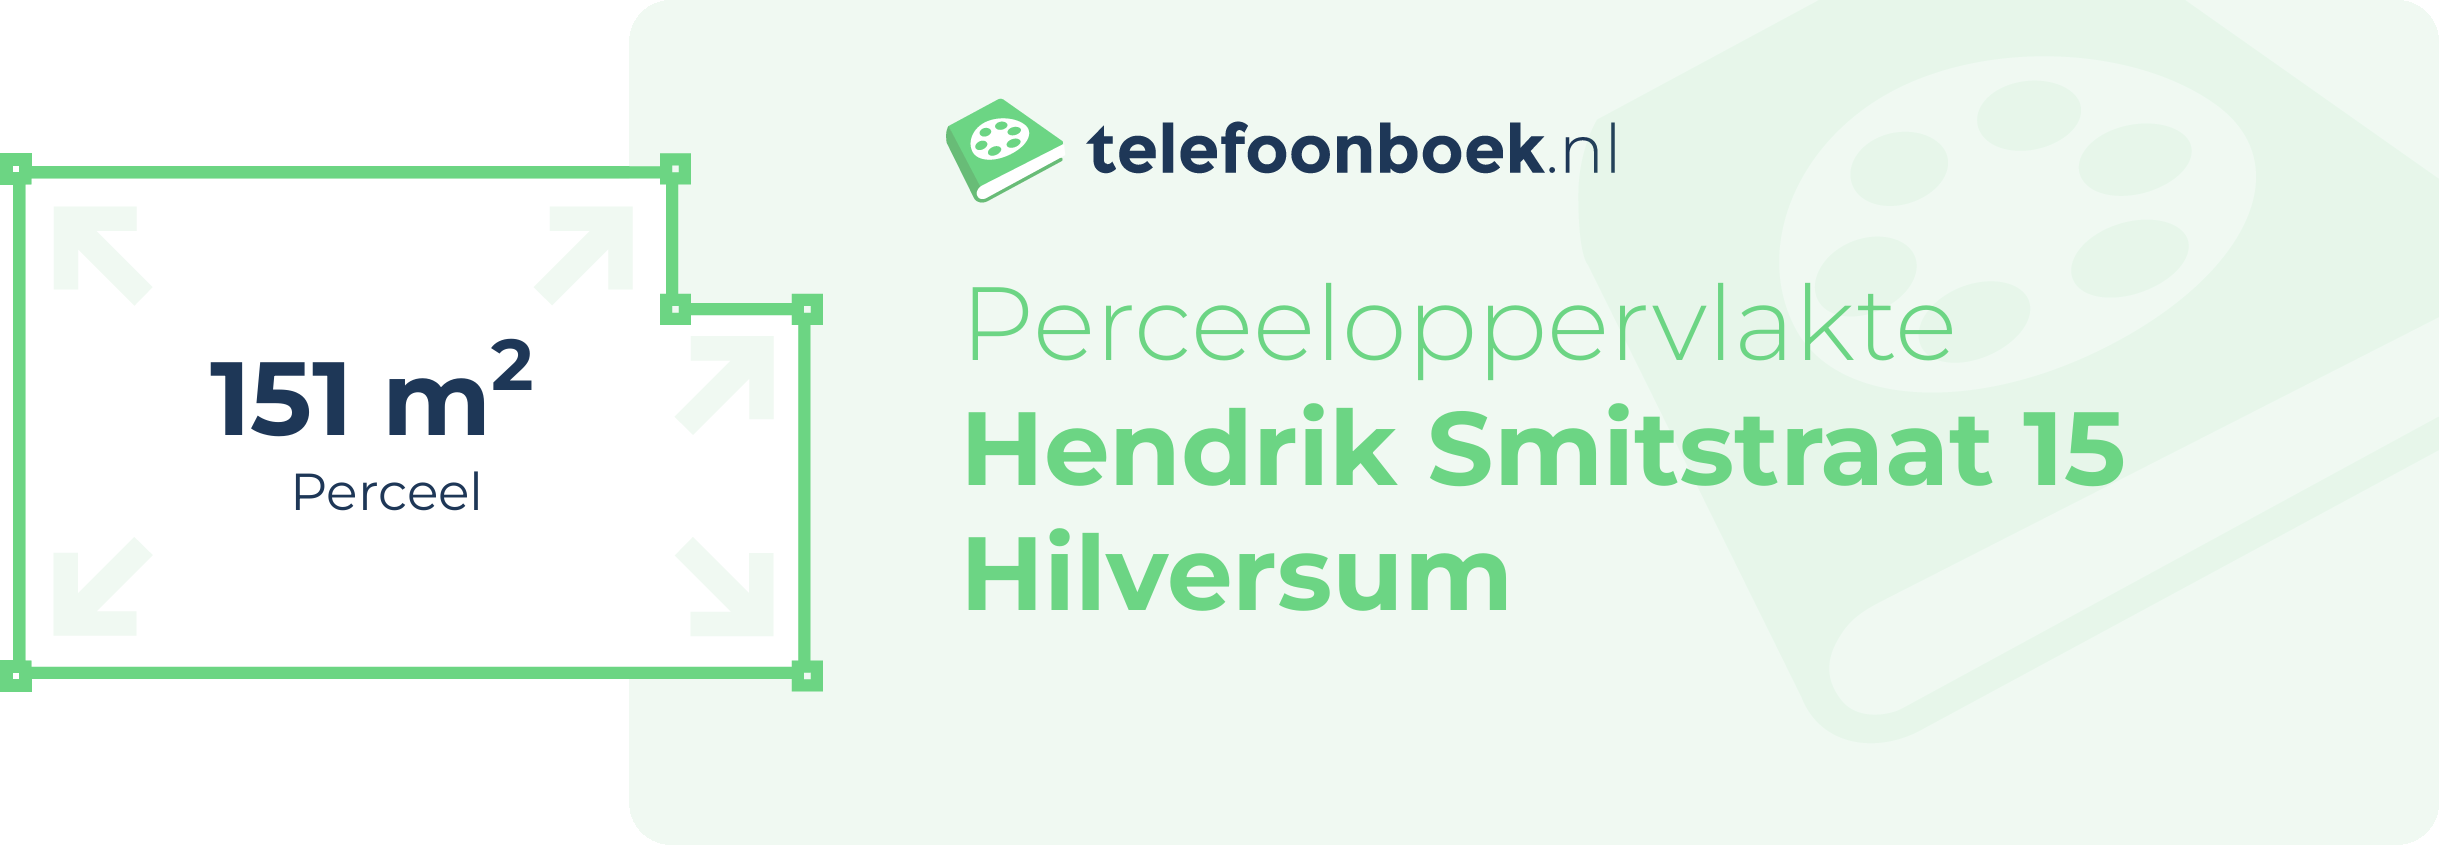 Perceeloppervlakte Hendrik Smitstraat 15 Hilversum